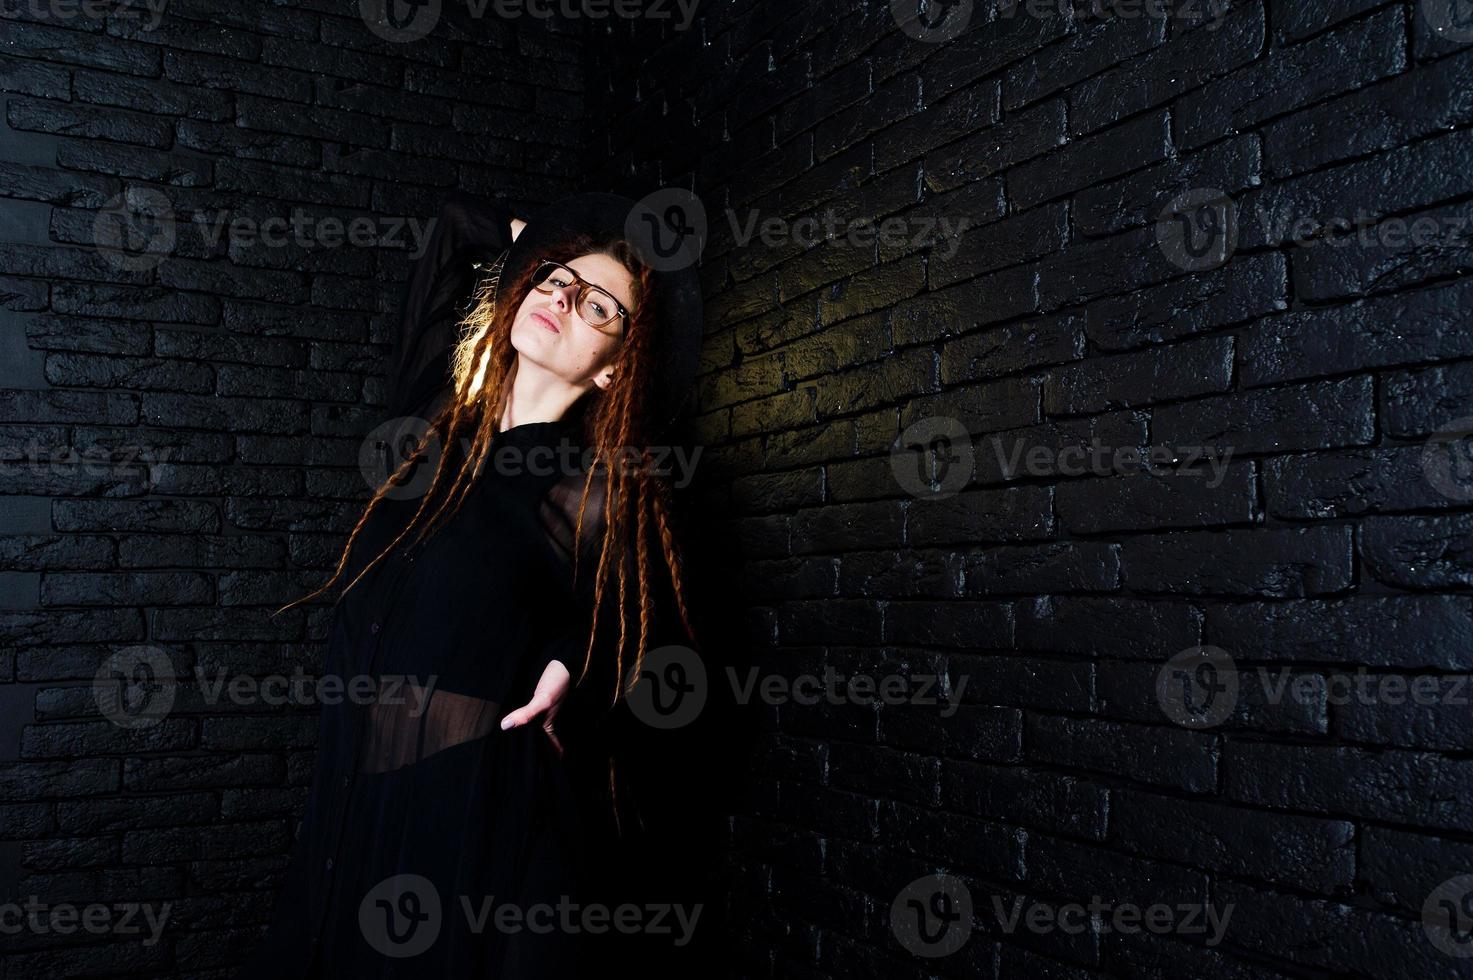 tournage en studio d'une fille en noir avec des dreads, des lunettes et un chapeau sur fond de briques. photo